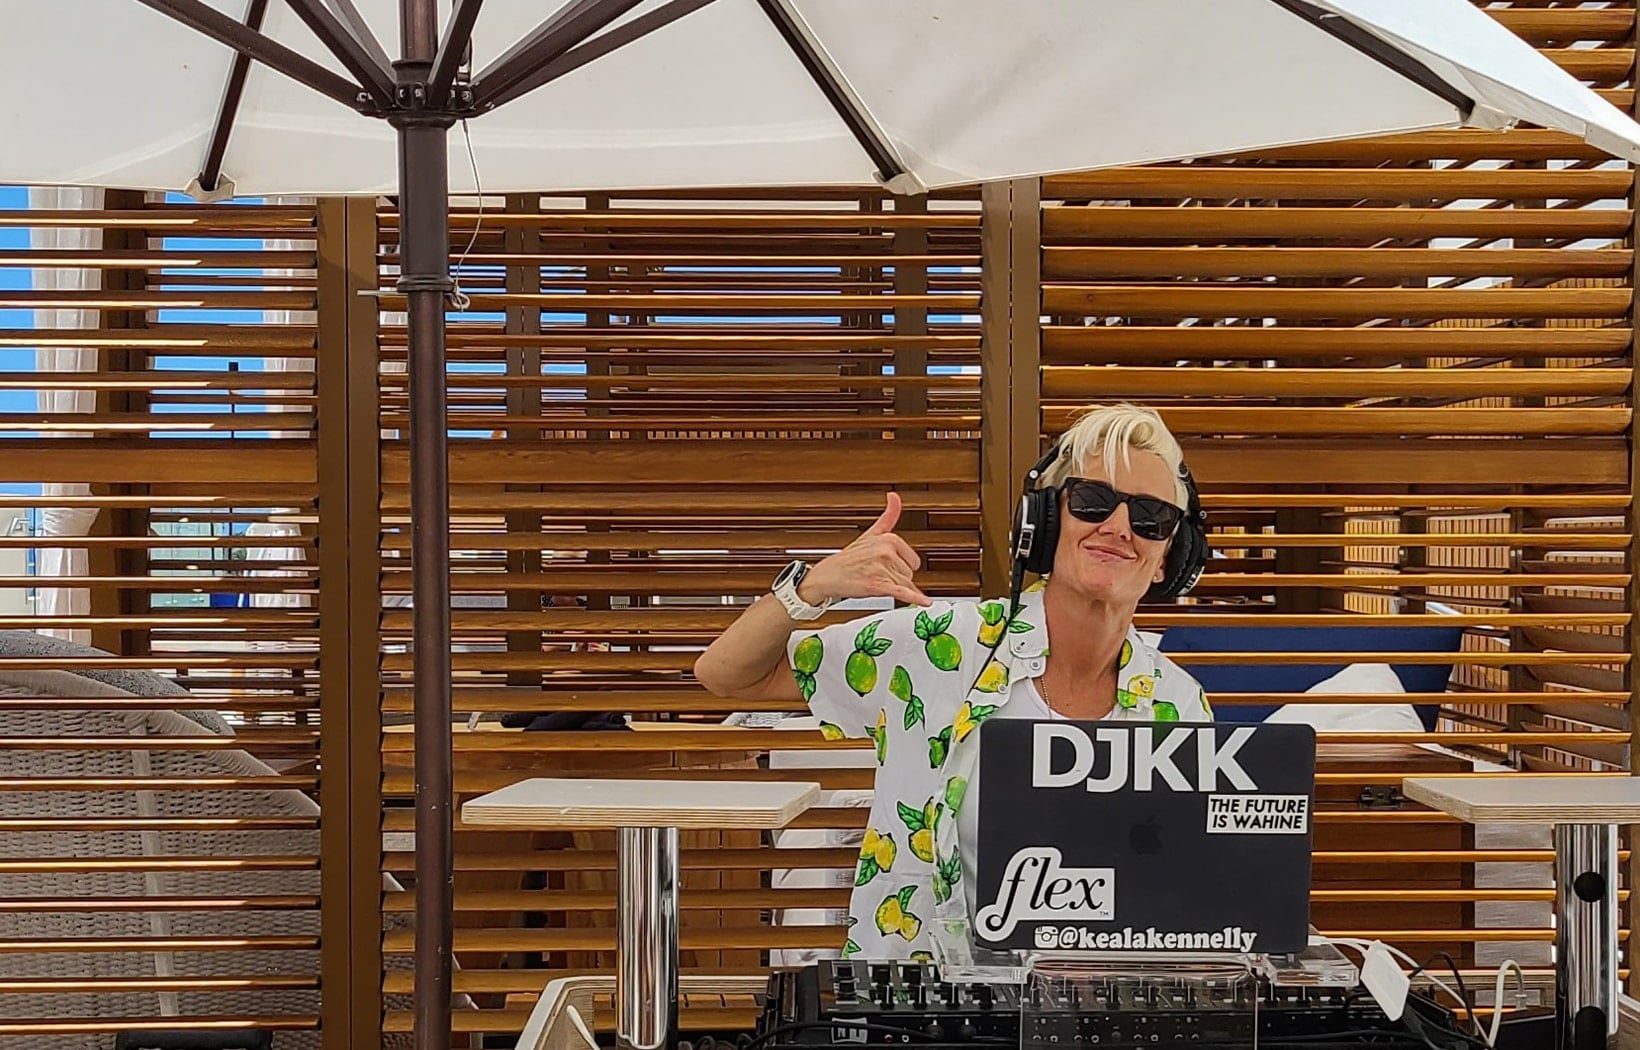 DJ KK with shaka sign in Longboard cabana